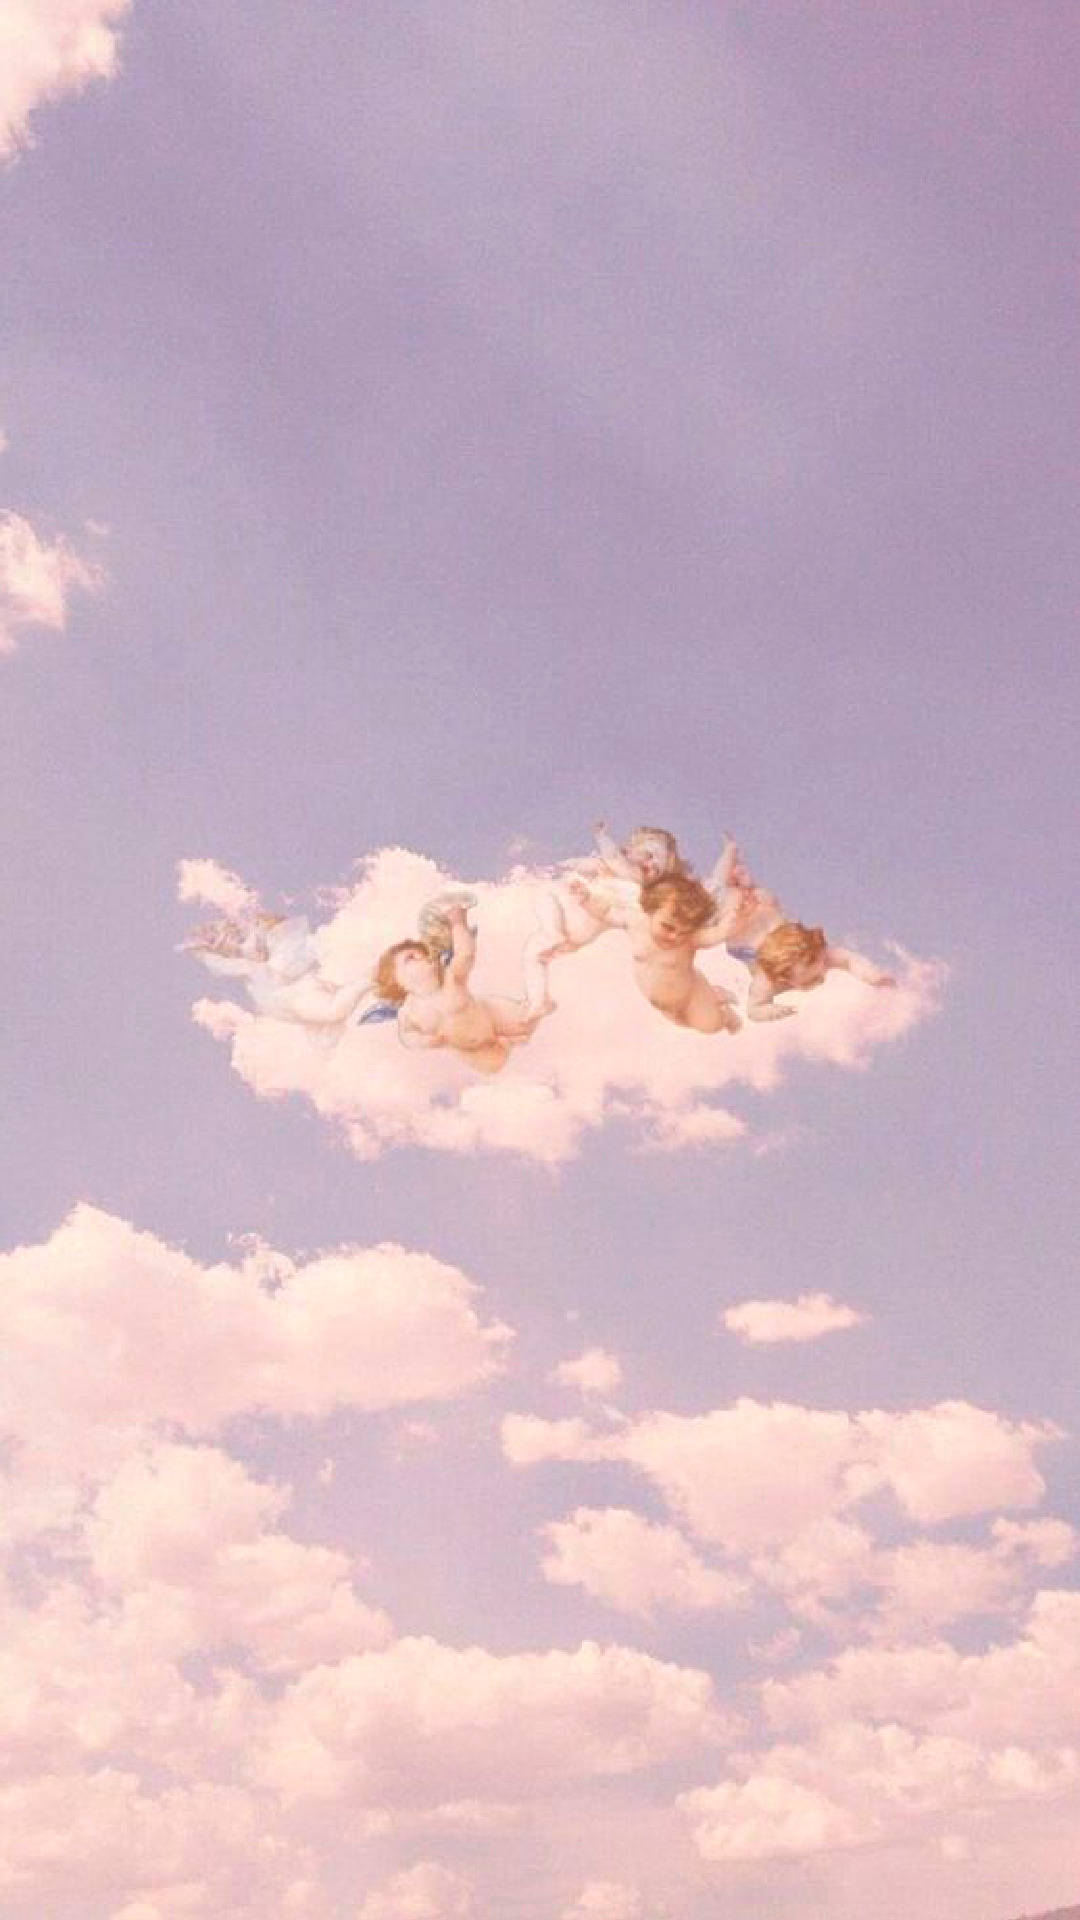 Vintage Aesthetic Clouds Cherub Angels Wallpaper